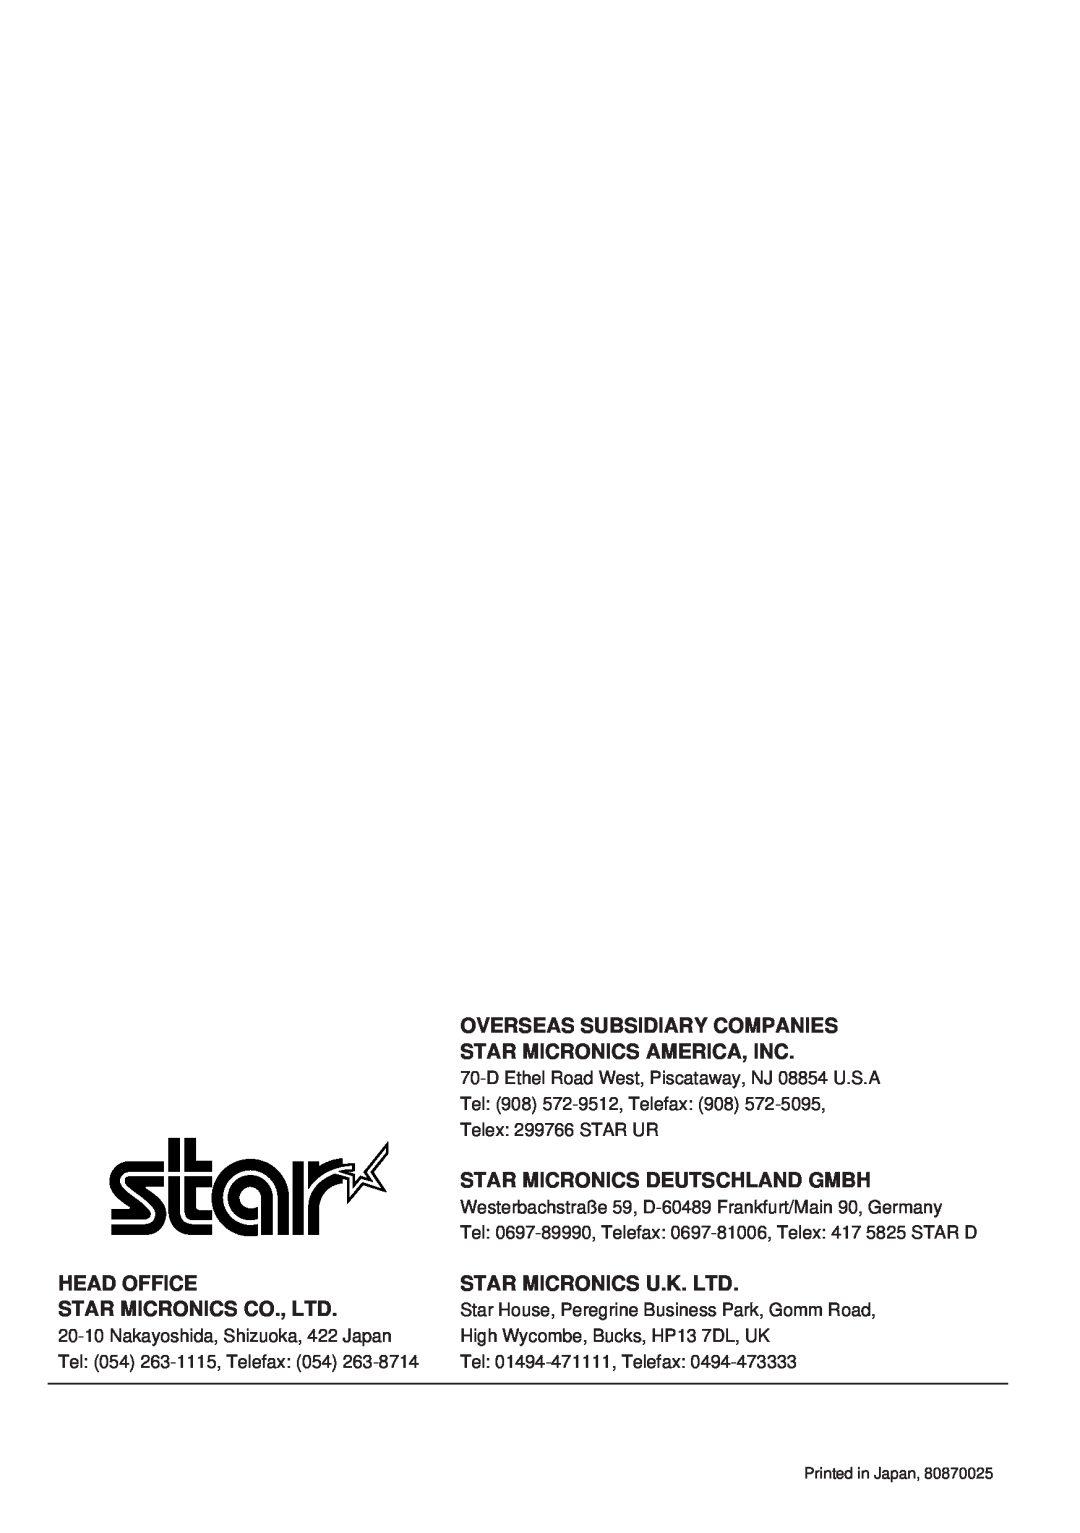 Star Micronics TSP400 Series Overseas Subsidiary Companies Star Micronics America, Inc, Star Micronics Deutschland Gmbh 